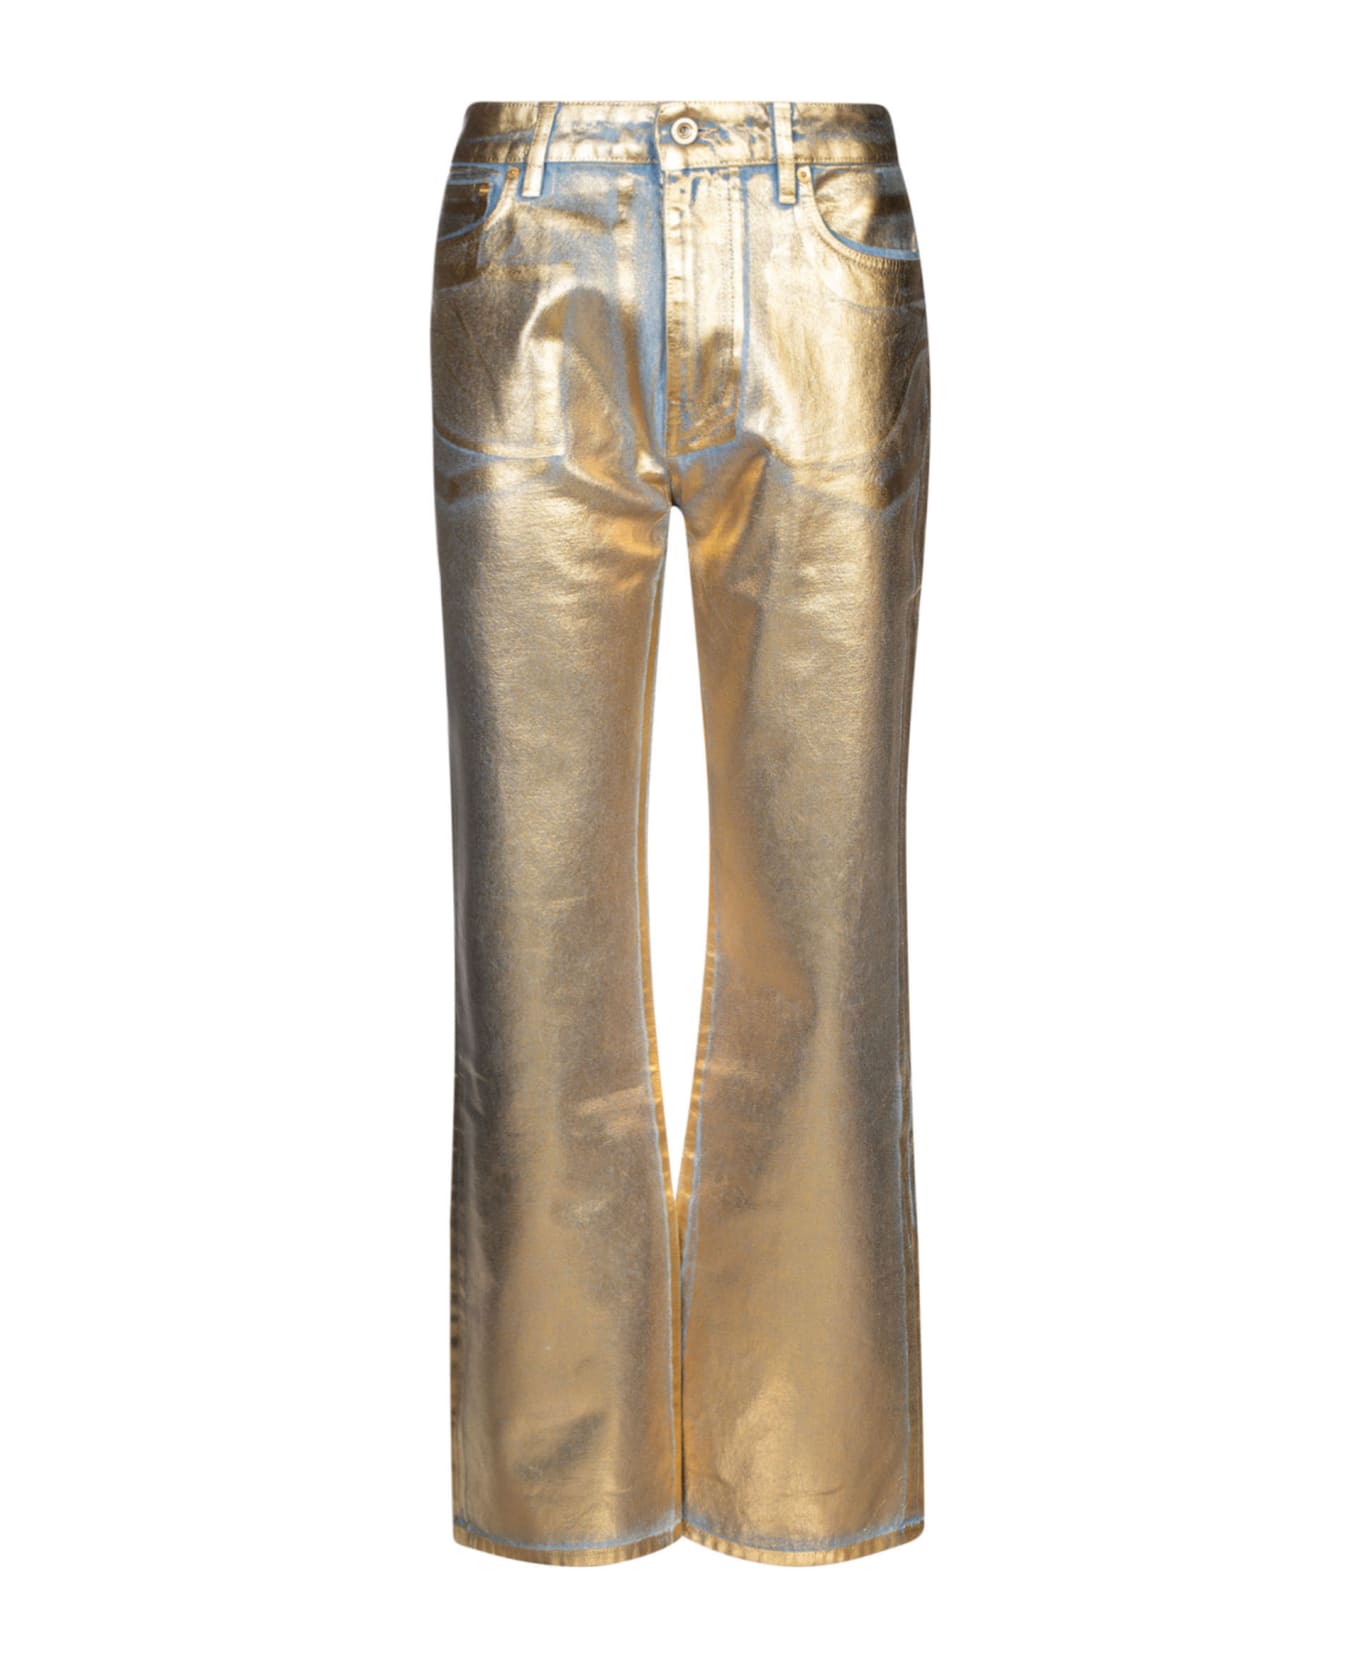 Paco Rabanne Metallic Denim Jeans - Dark Gold